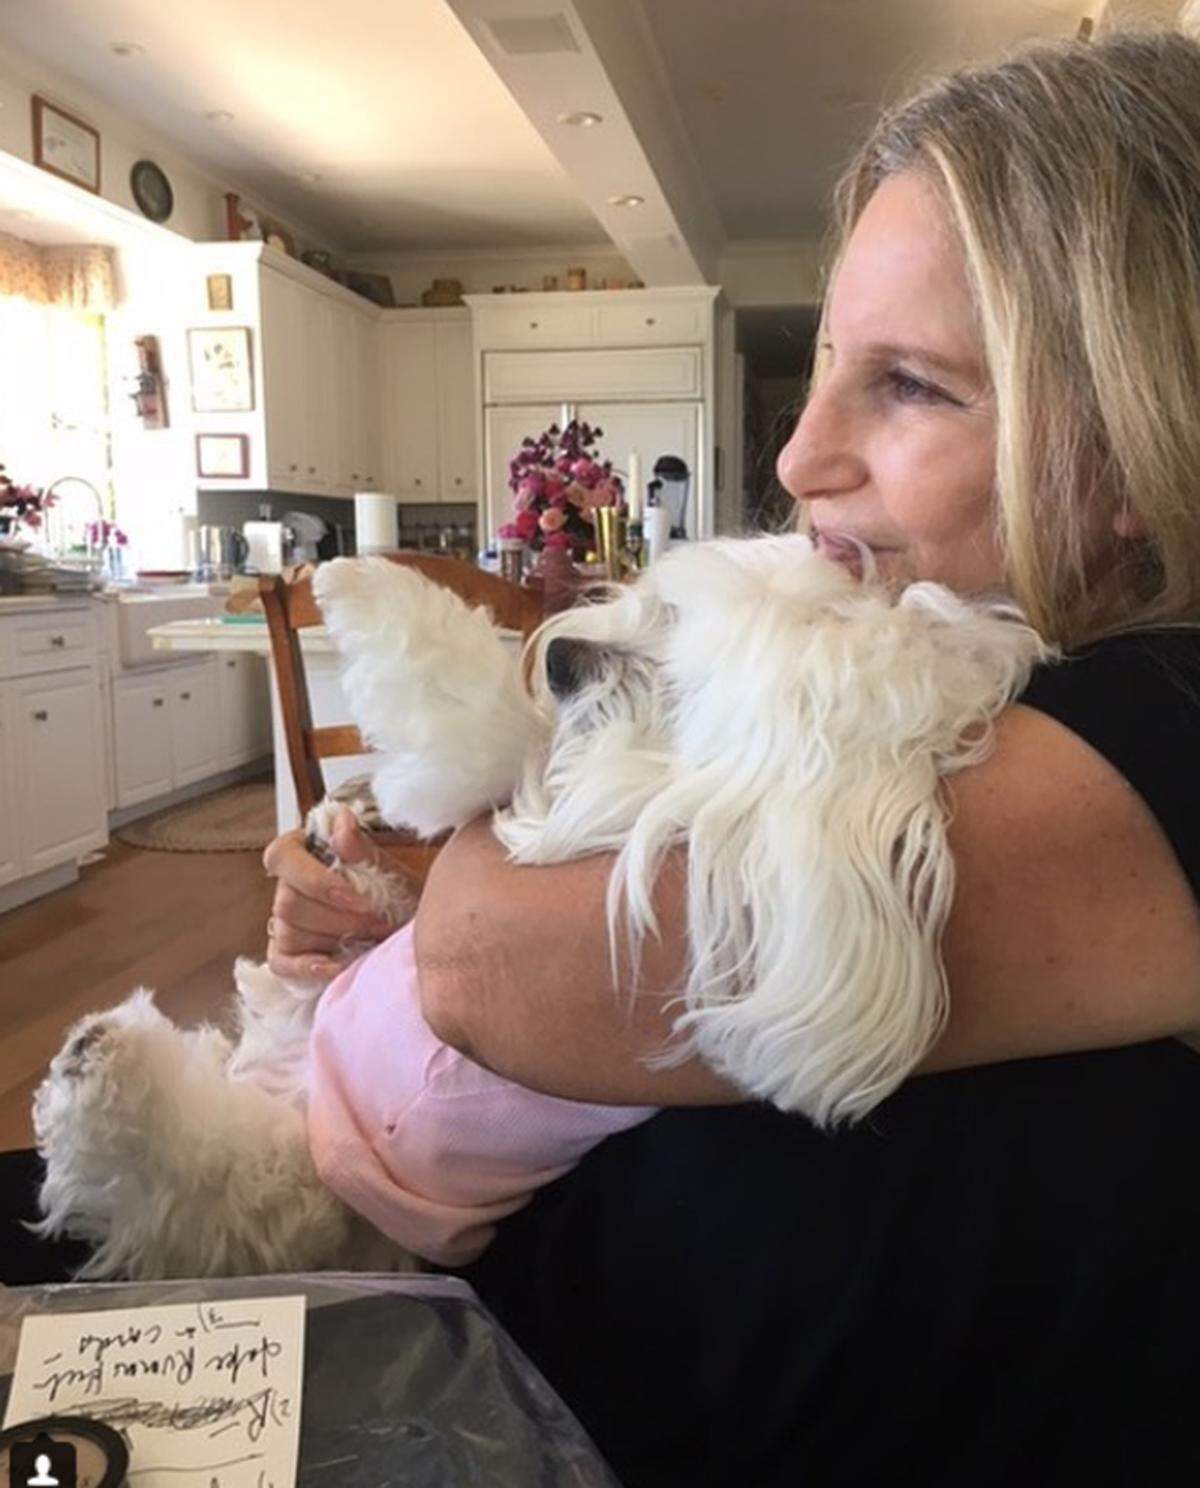 Hollywood-Schauspielerin Barbra Streisand hat ihren sterbenden Hund geklont - gleich zwei Mal. Das erzählte die 75-Jährige in einem am Dienstag veröffentlichten Interview des US-Magazins "Variety". Demnach entnahm sie Zellen aus dem Maul und dem Bauch ihres Hundes Samantha, als dieser im vergangenen Jahr starb. Details zum anschließenden Verfahren nannte sie nicht.